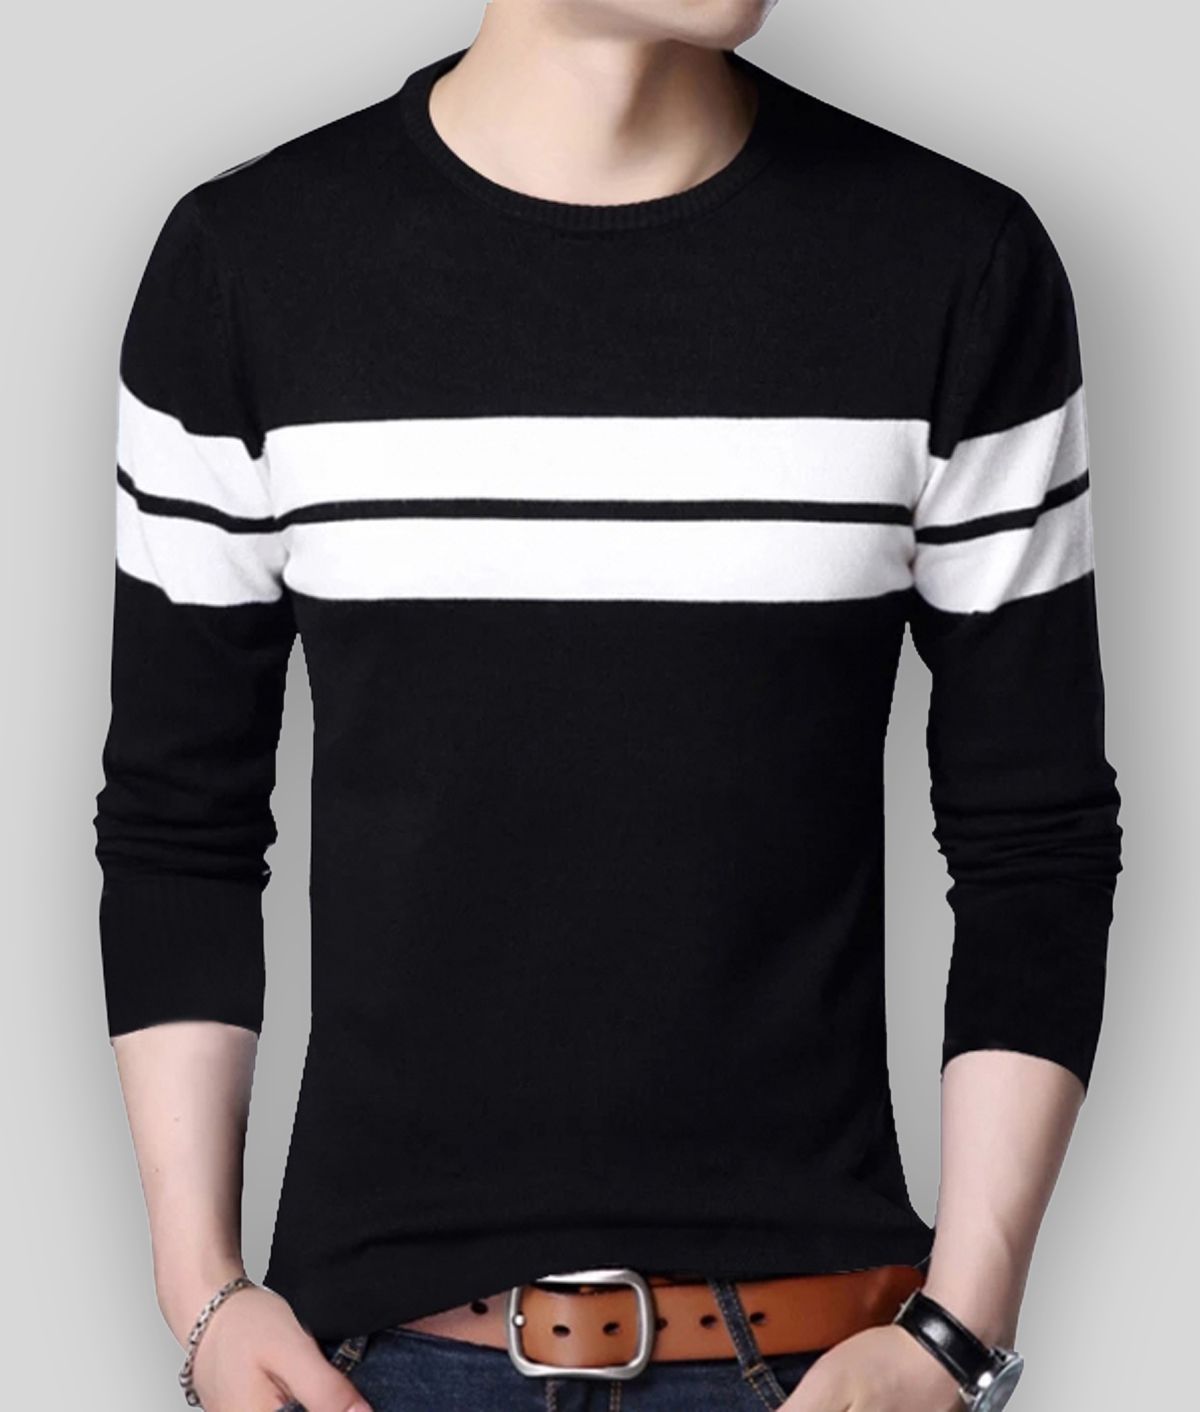     			Leotude - Black Cotton Blend Regular Fit Men's T-Shirt ( Pack of 1 )